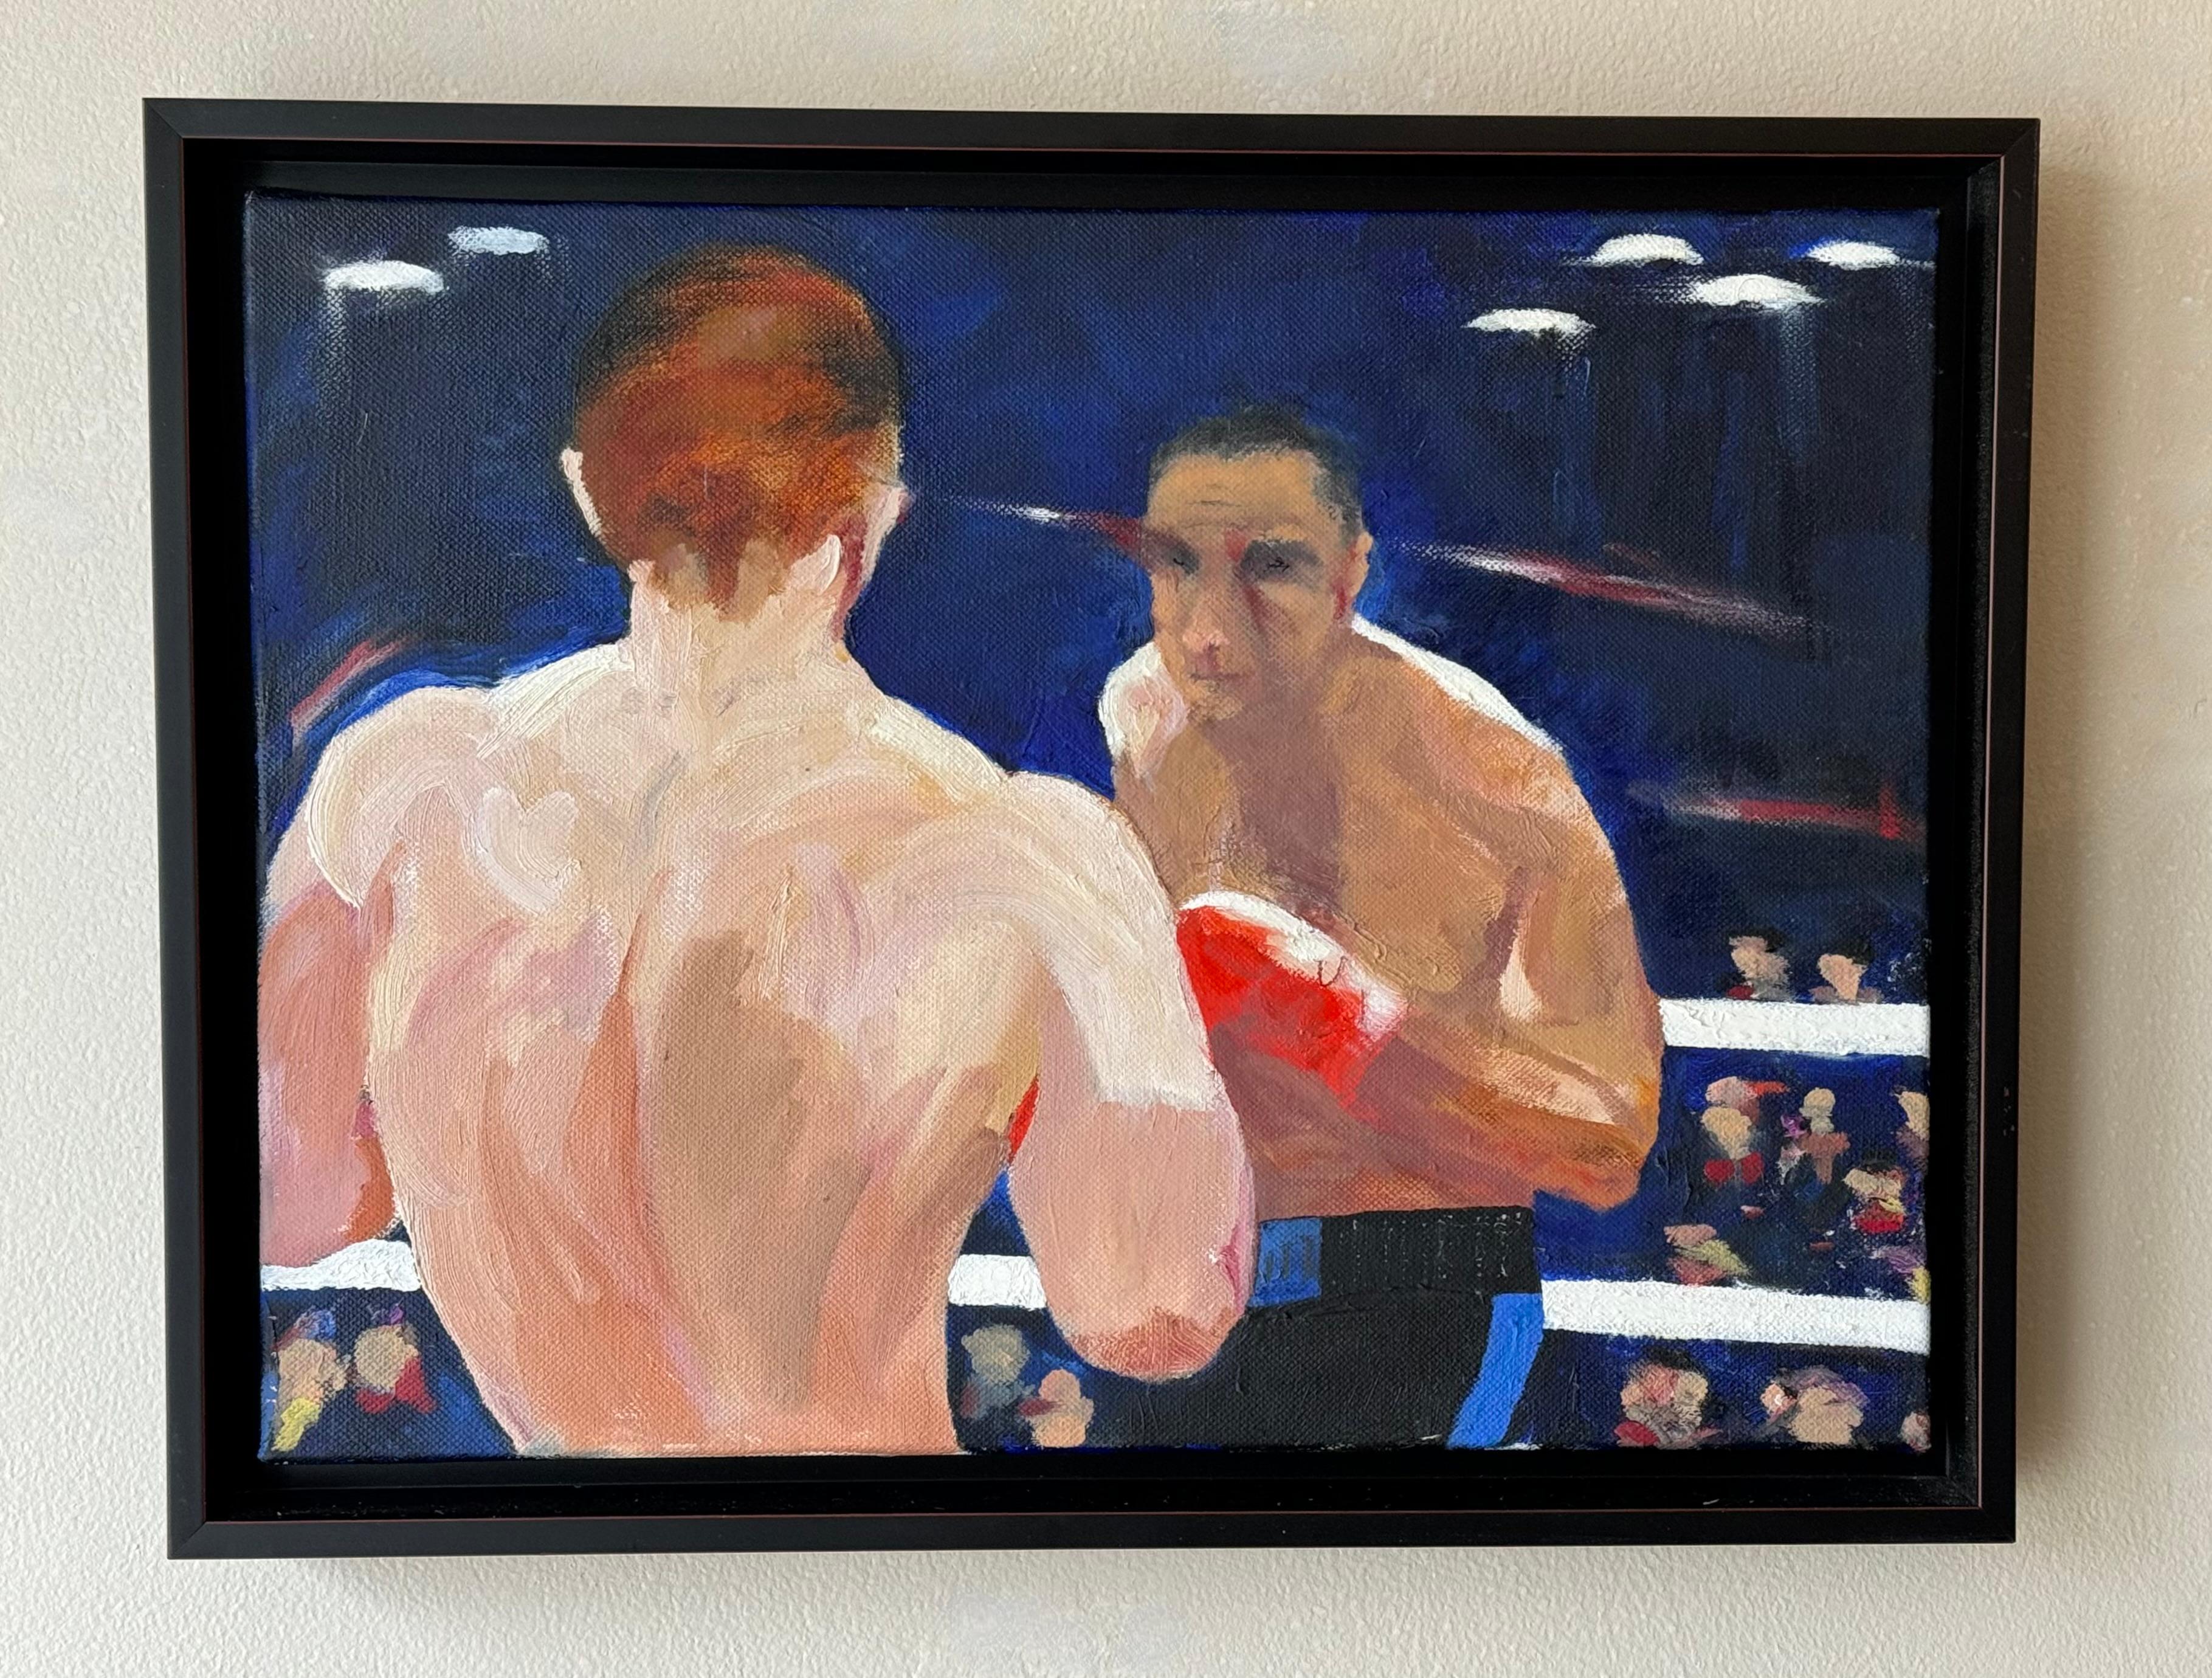 Acryl auf Leinwand Gemälde von zwei Boxern im Ring mit den Zuschauern im Hintergrund. Es ist in einem leicht abstrakten Stil gehalten, der an die 1950er Jahre erinnert. Die Leinwand selbst schwebt in einem schwarzen Rahmen mit einem roten Streifen